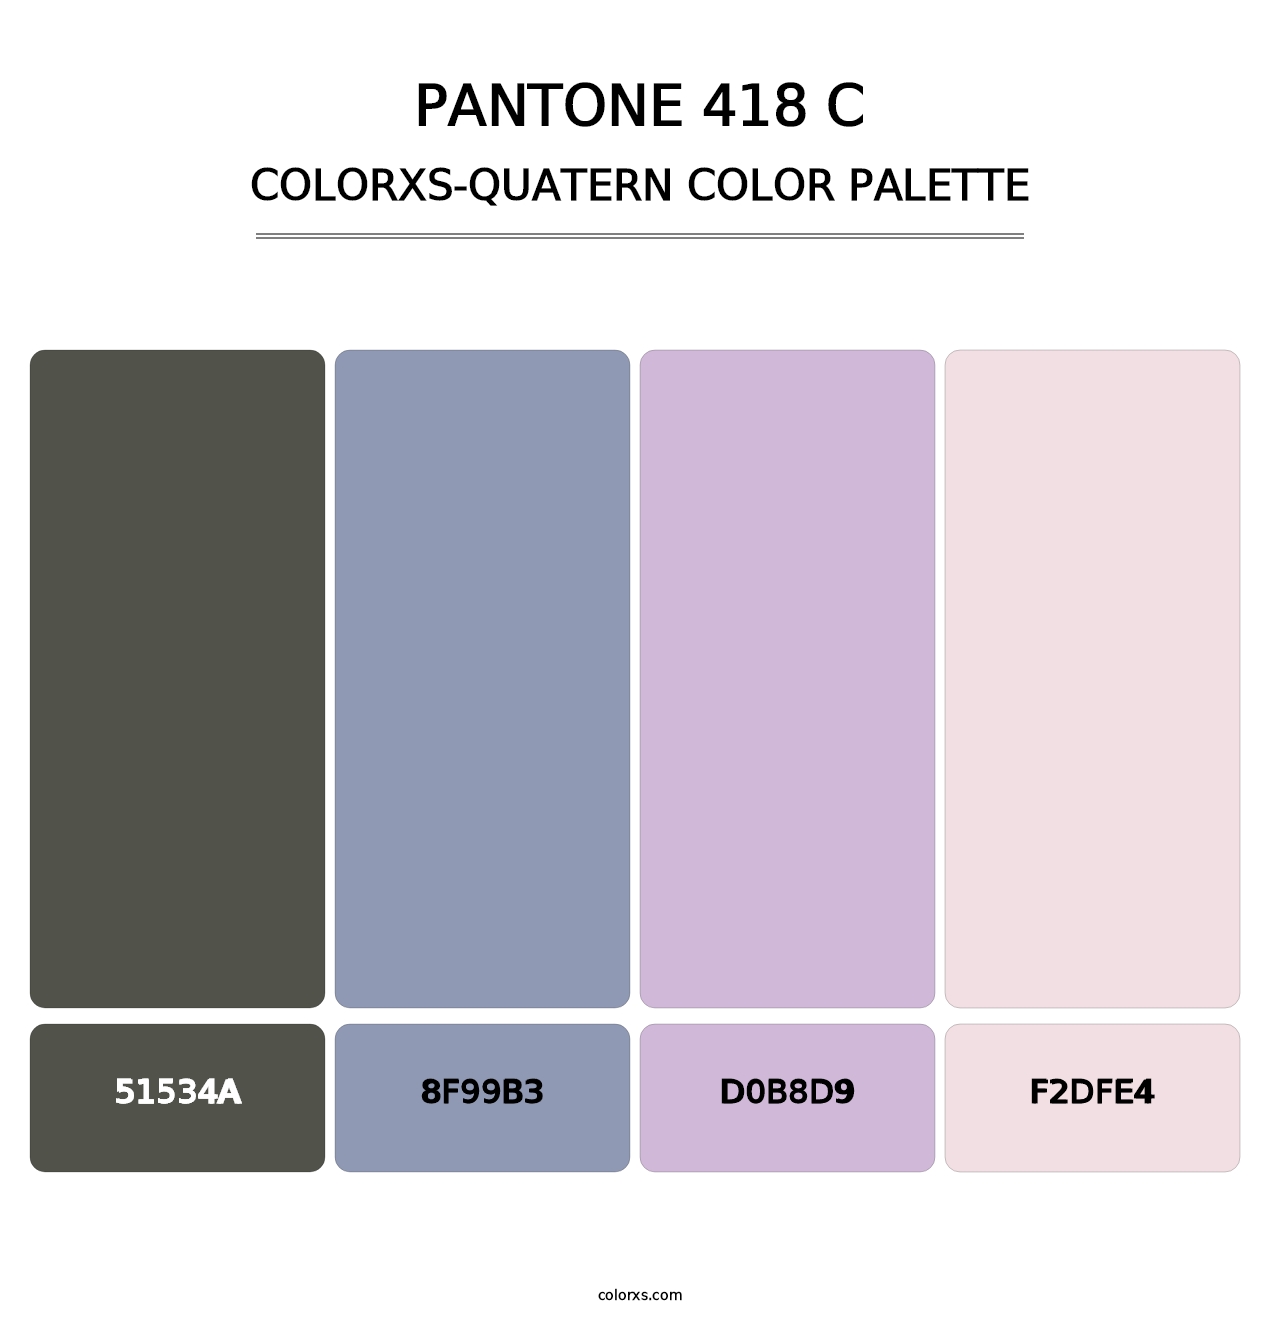 PANTONE 418 C - Colorxs Quatern Palette